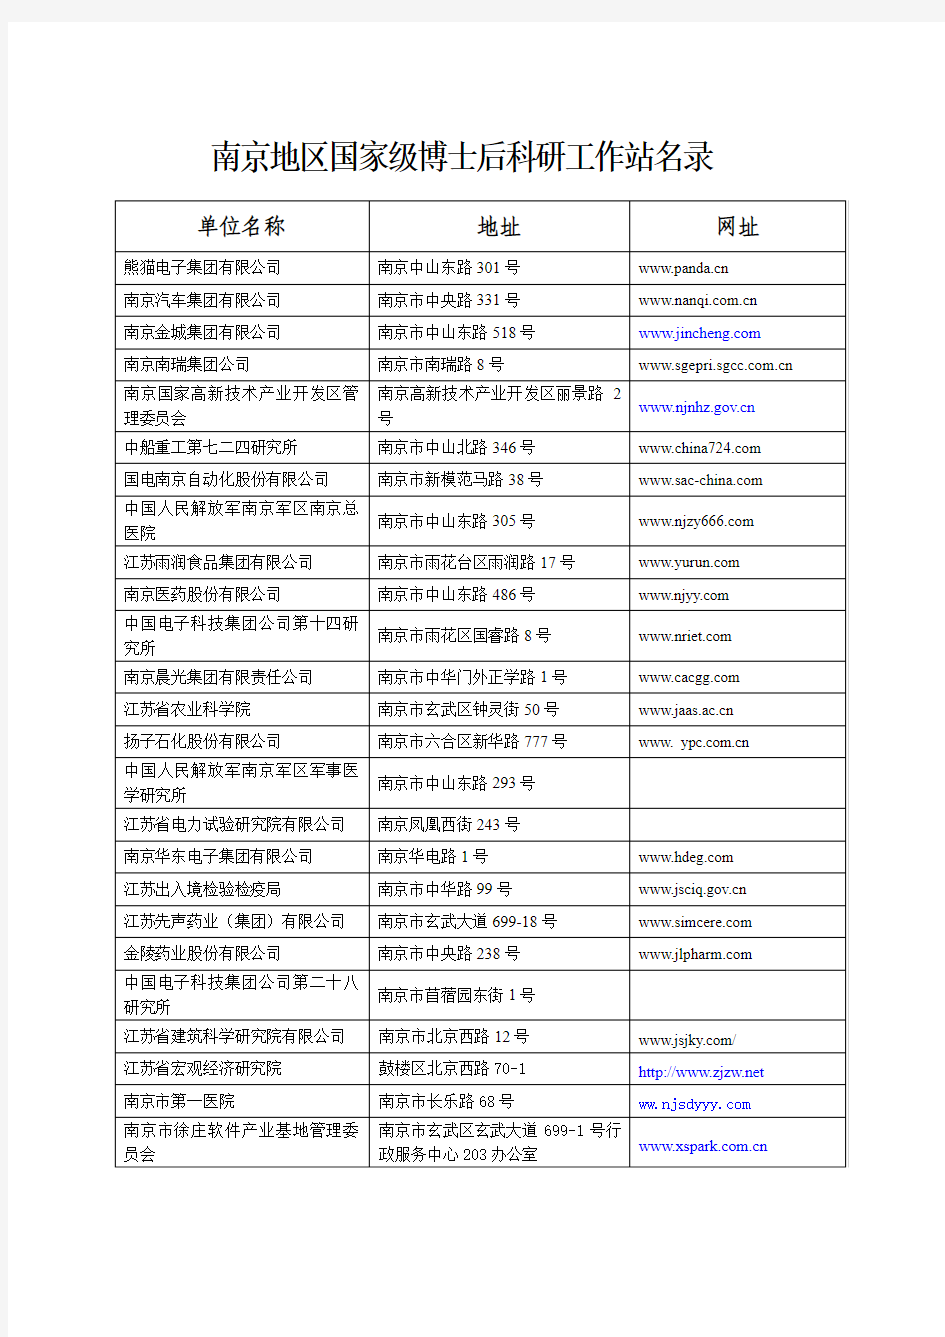 南京地区博士后科研工作站名录